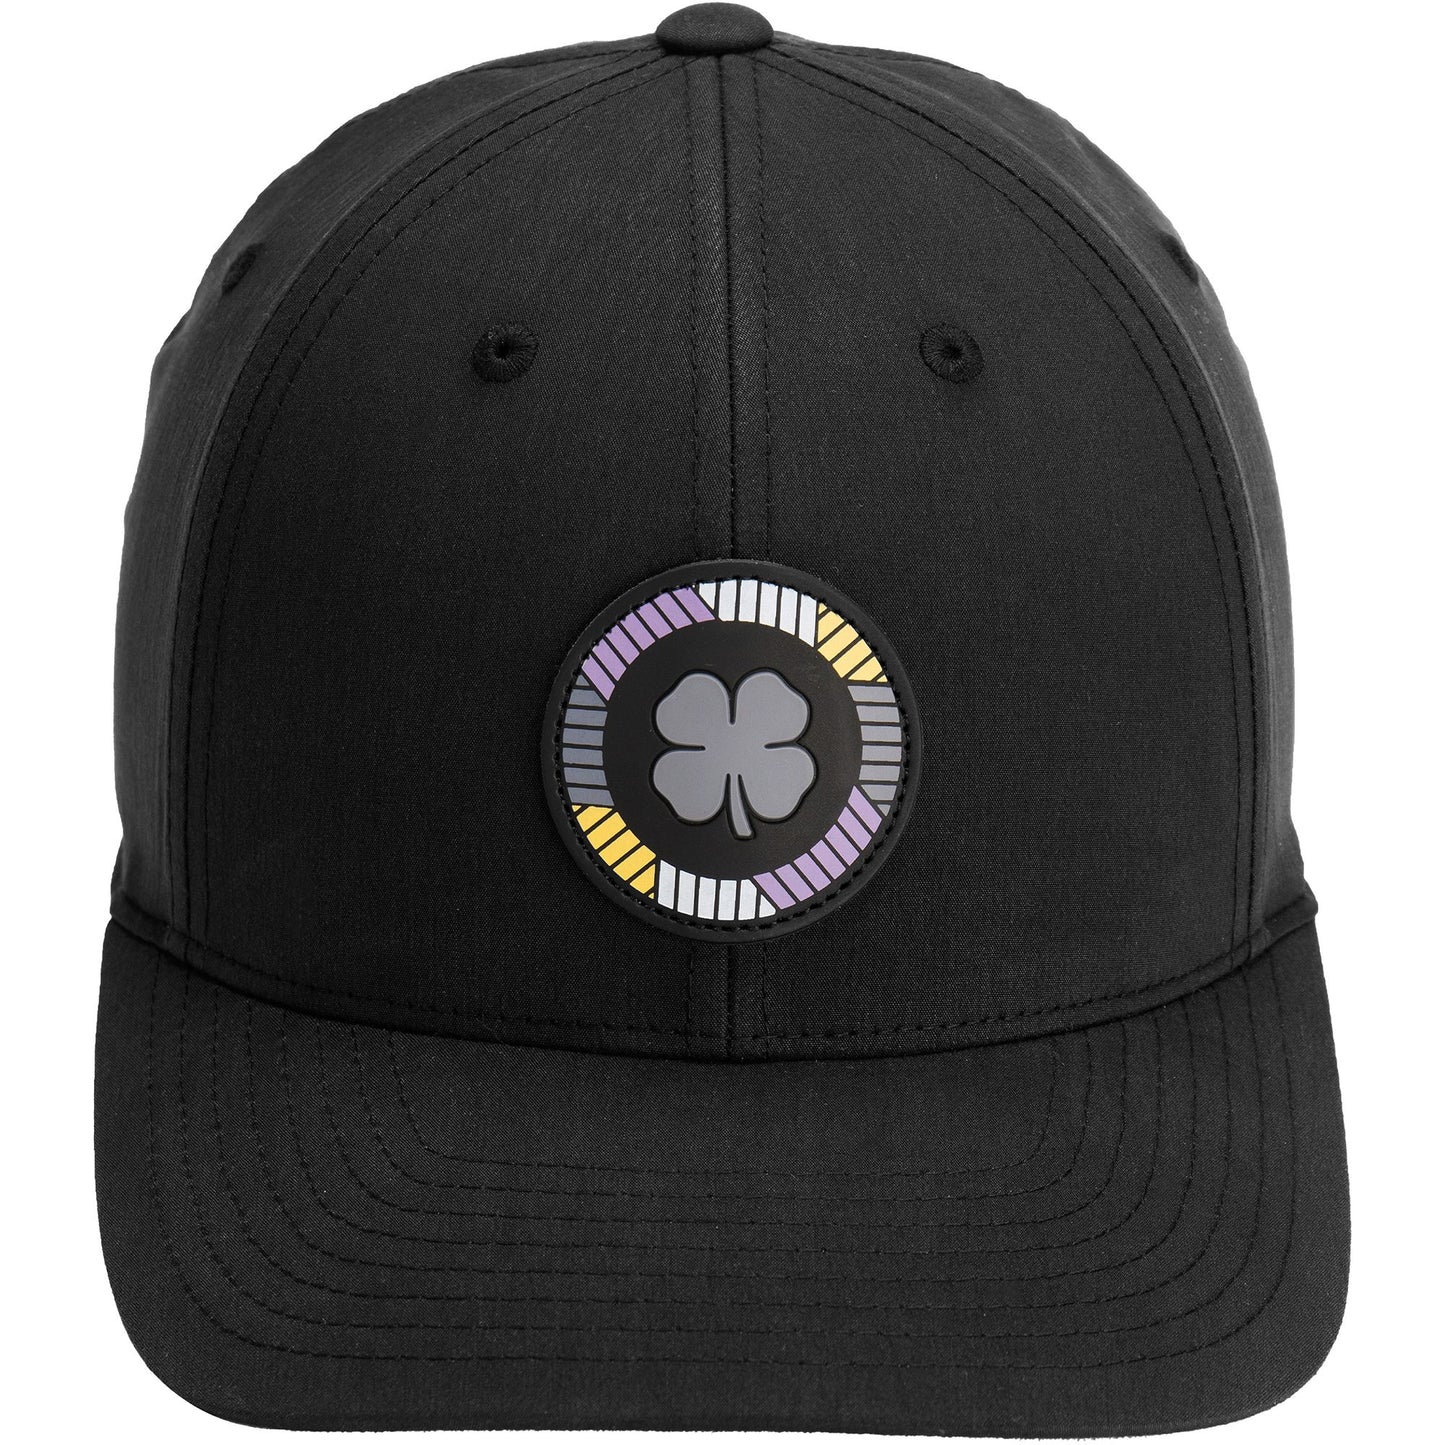 Black Clover Men's Upload Snapback Golf Hat